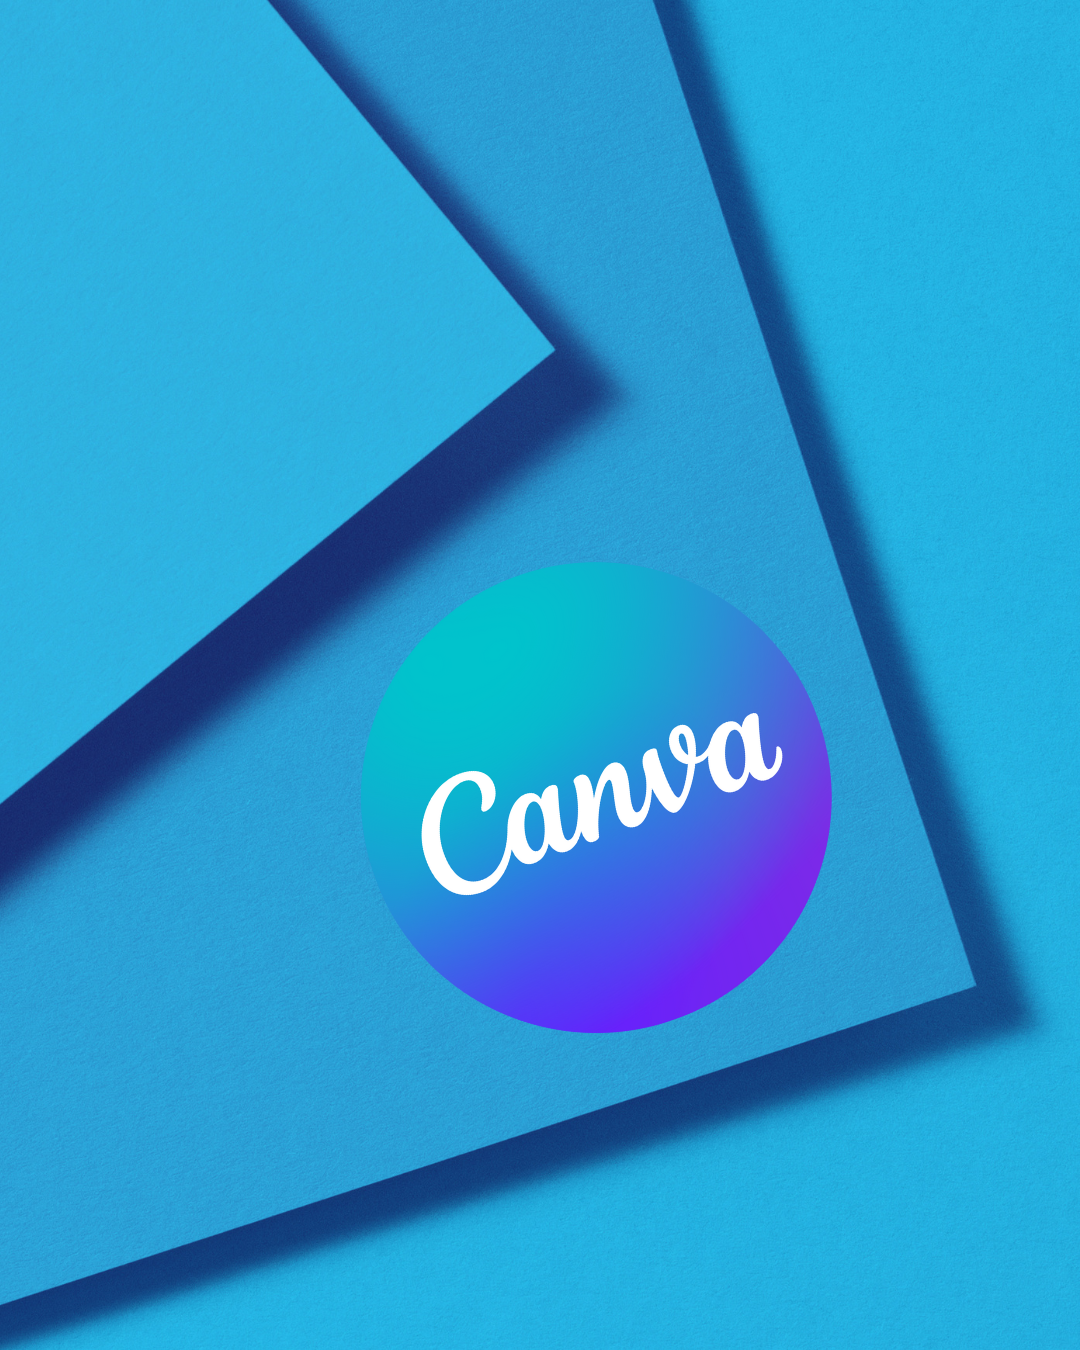 Social media management tools - Canva